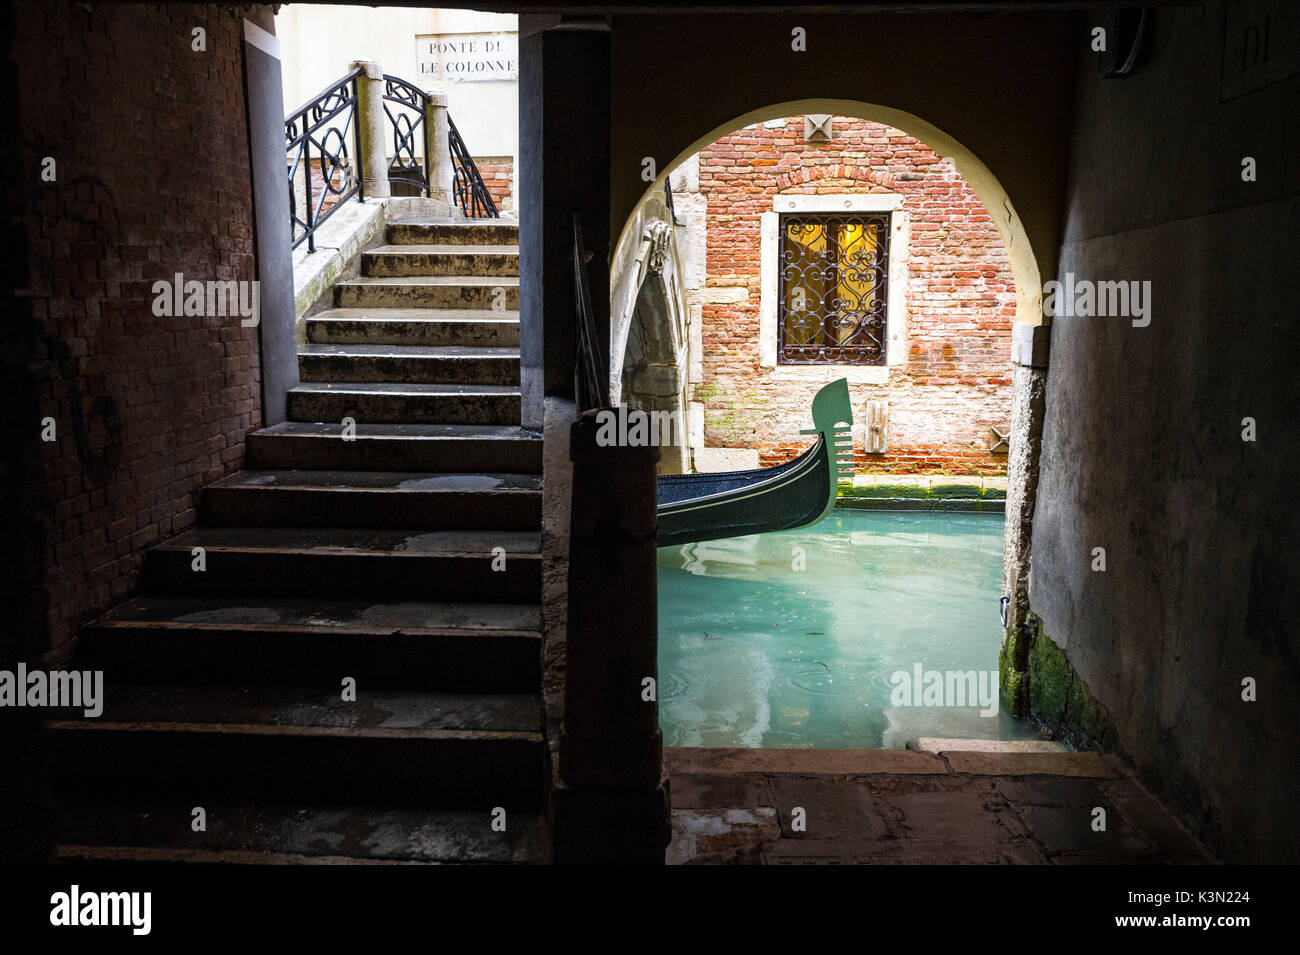 Eine typische Ecke von Venedig mit Brücke. Venedig, Venetien, Italien Stockfoto